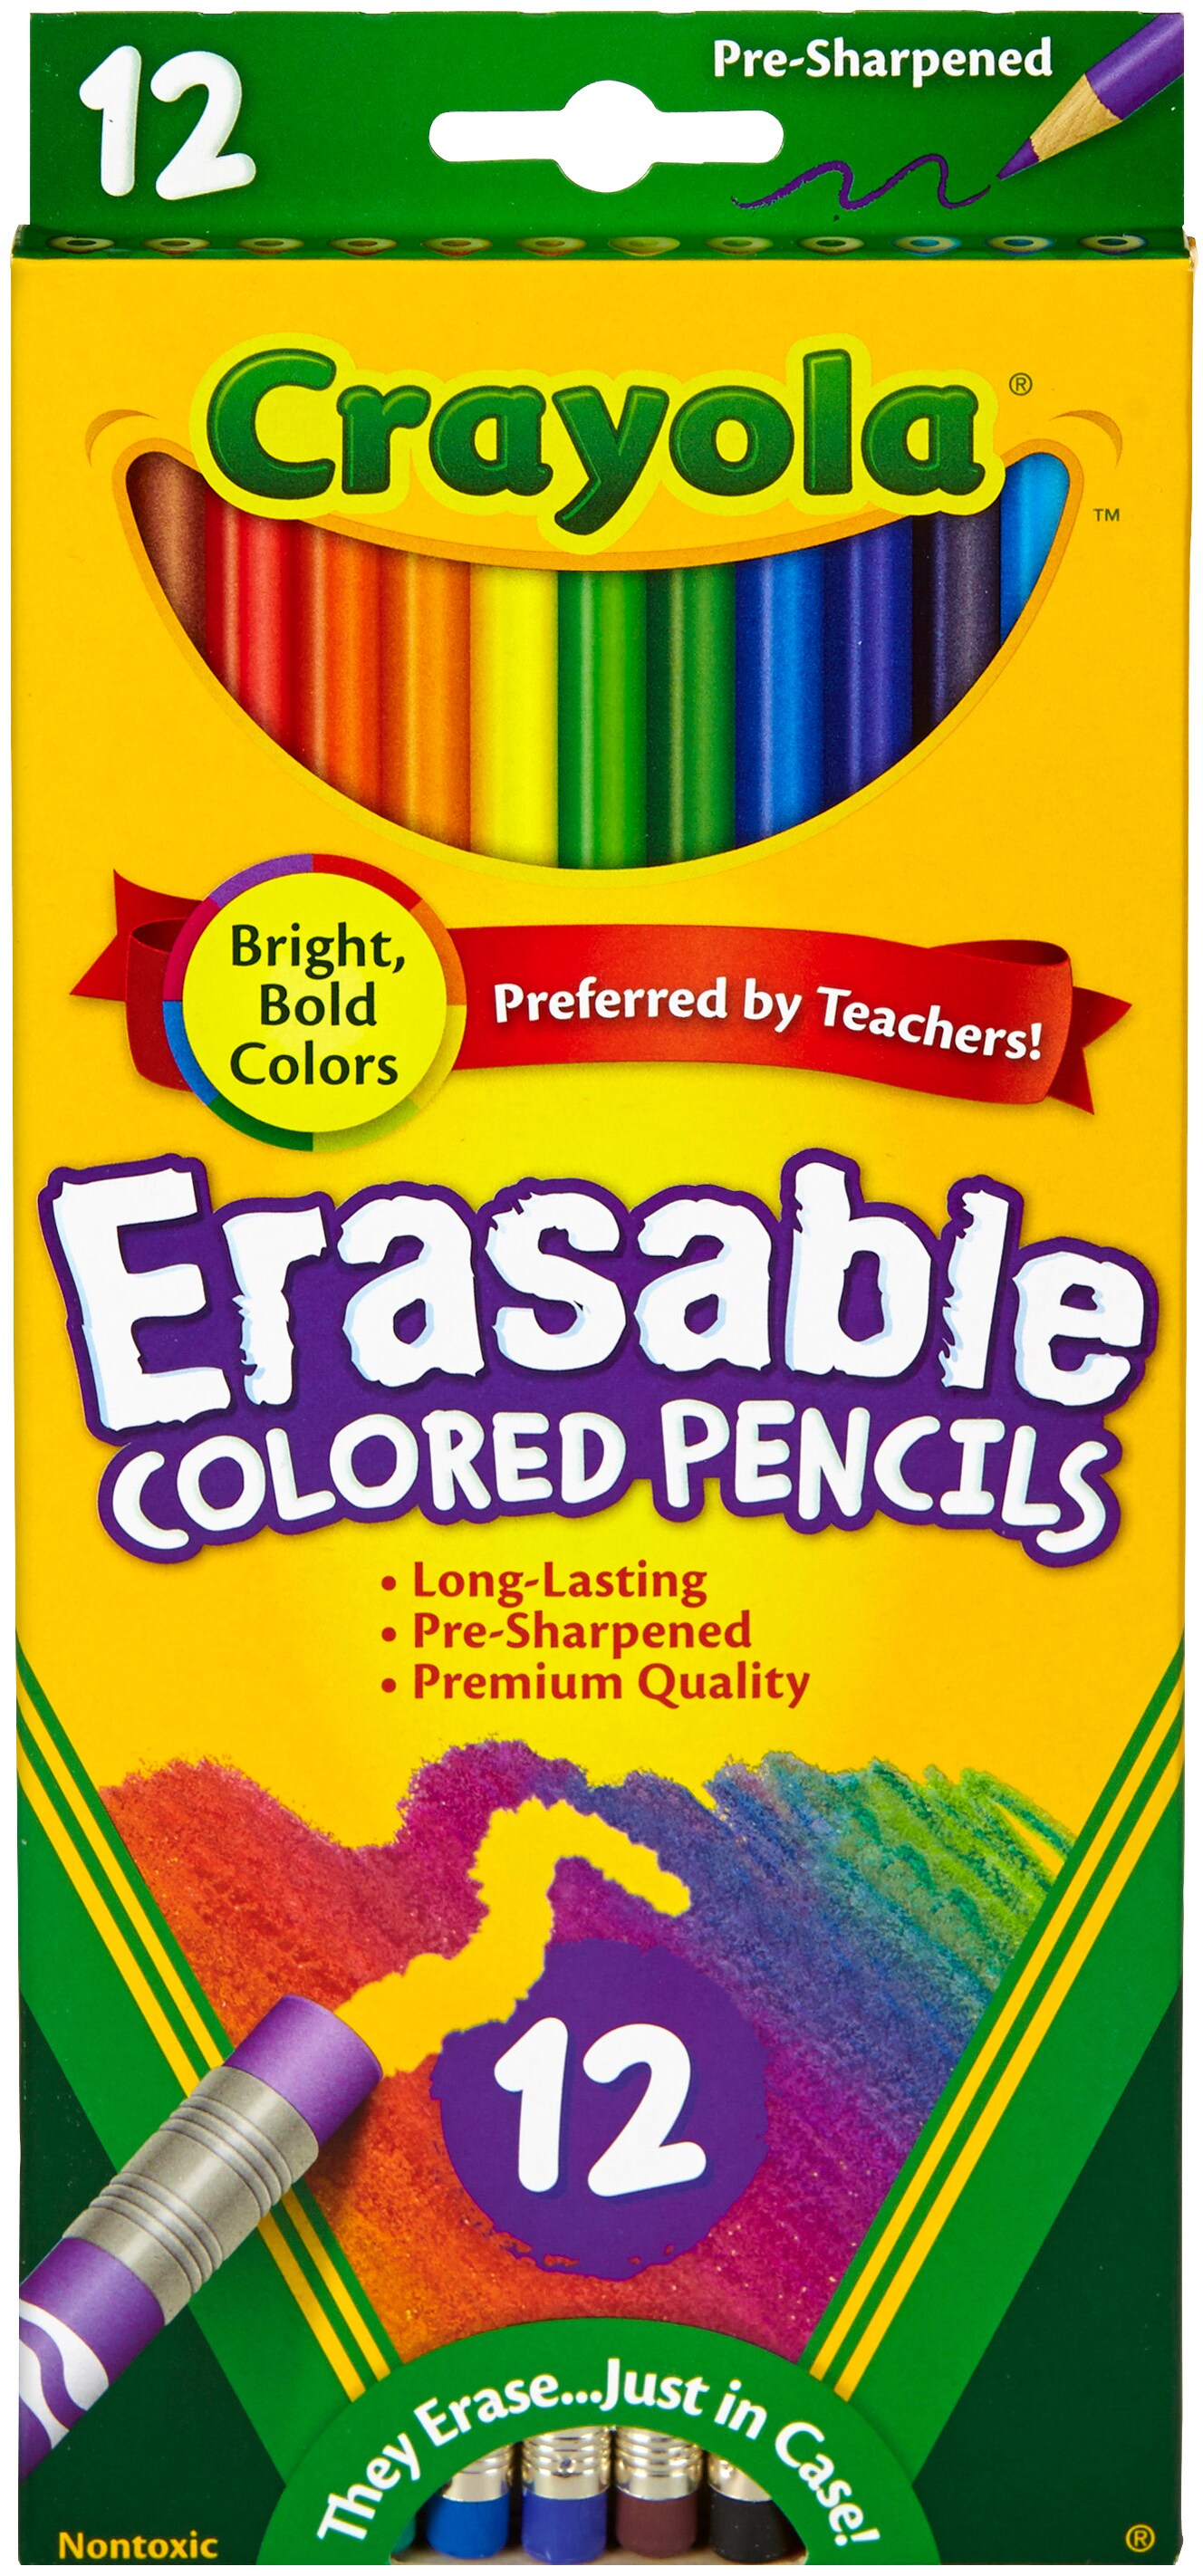 Crayola Erasable Colored Pencils